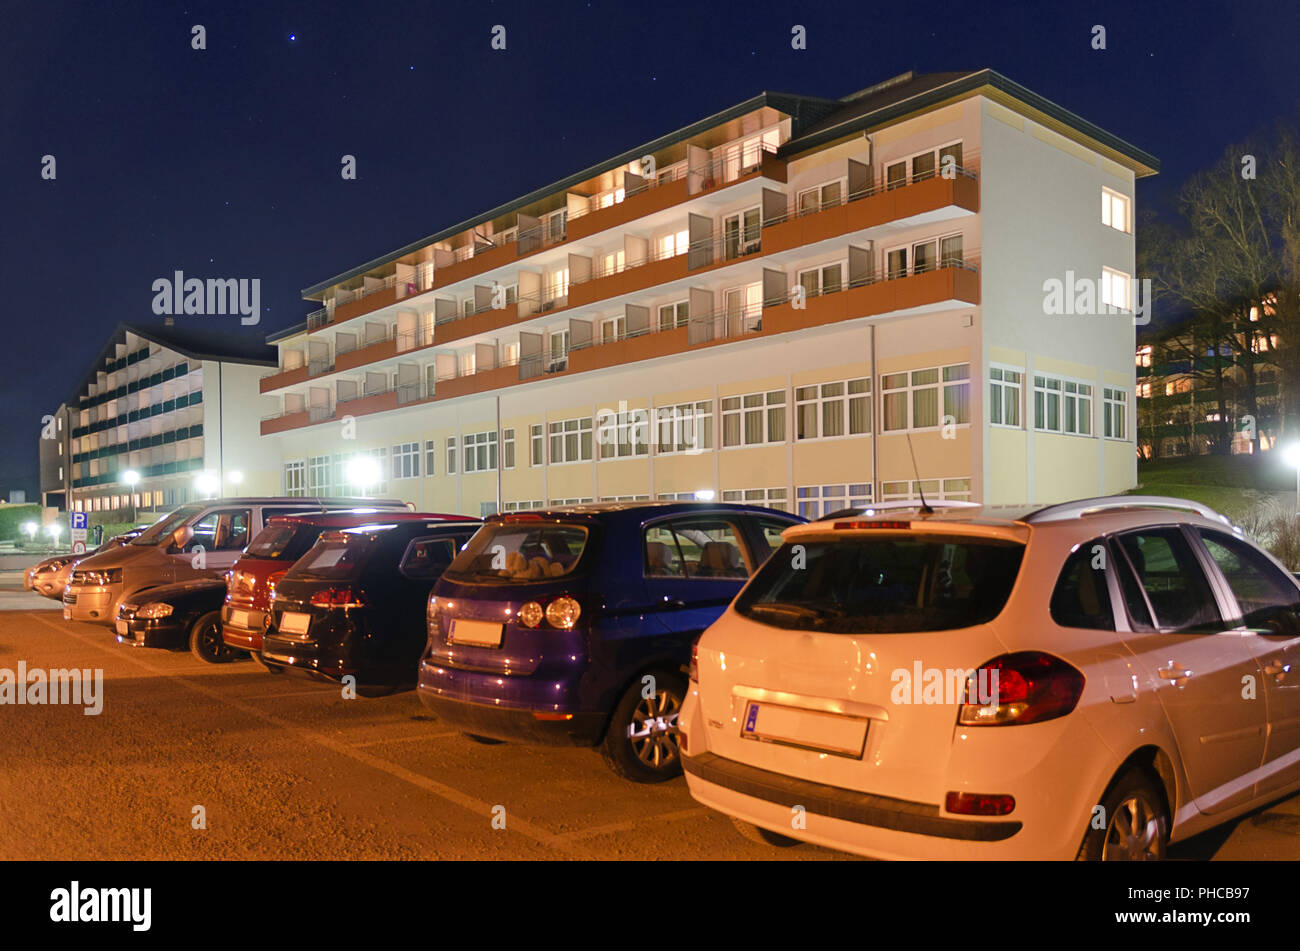 Schlamm Health Spa Harbach bei Nacht Stockfoto